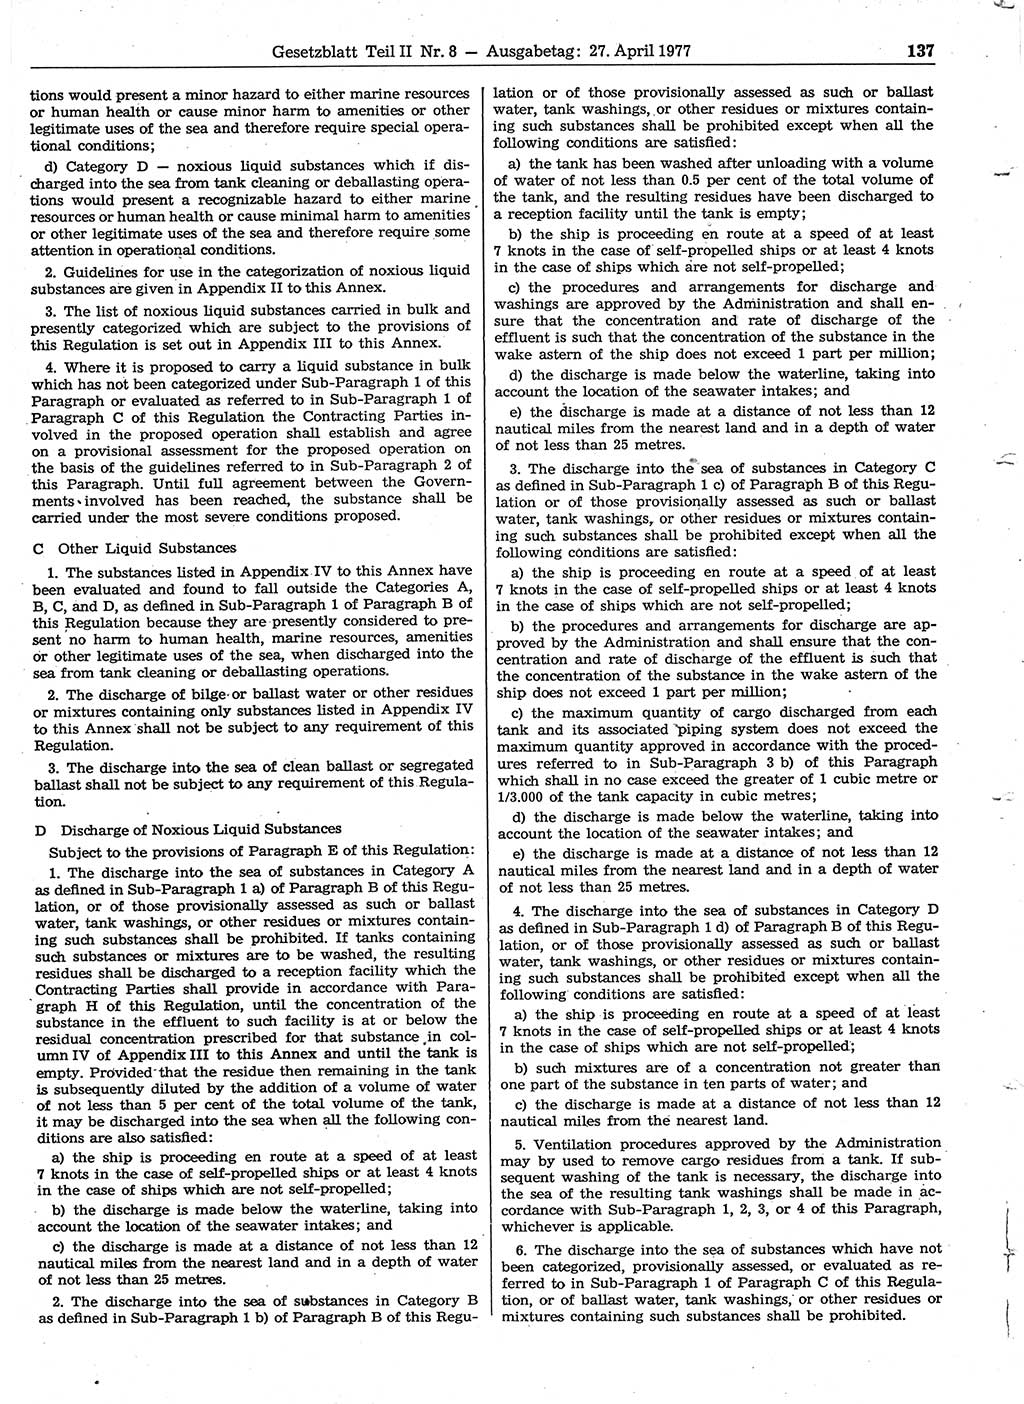 Gesetzblatt (GBl.) der Deutschen Demokratischen Republik (DDR) Teil ⅠⅠ 1977, Seite 137 (GBl. DDR ⅠⅠ 1977, S. 137)